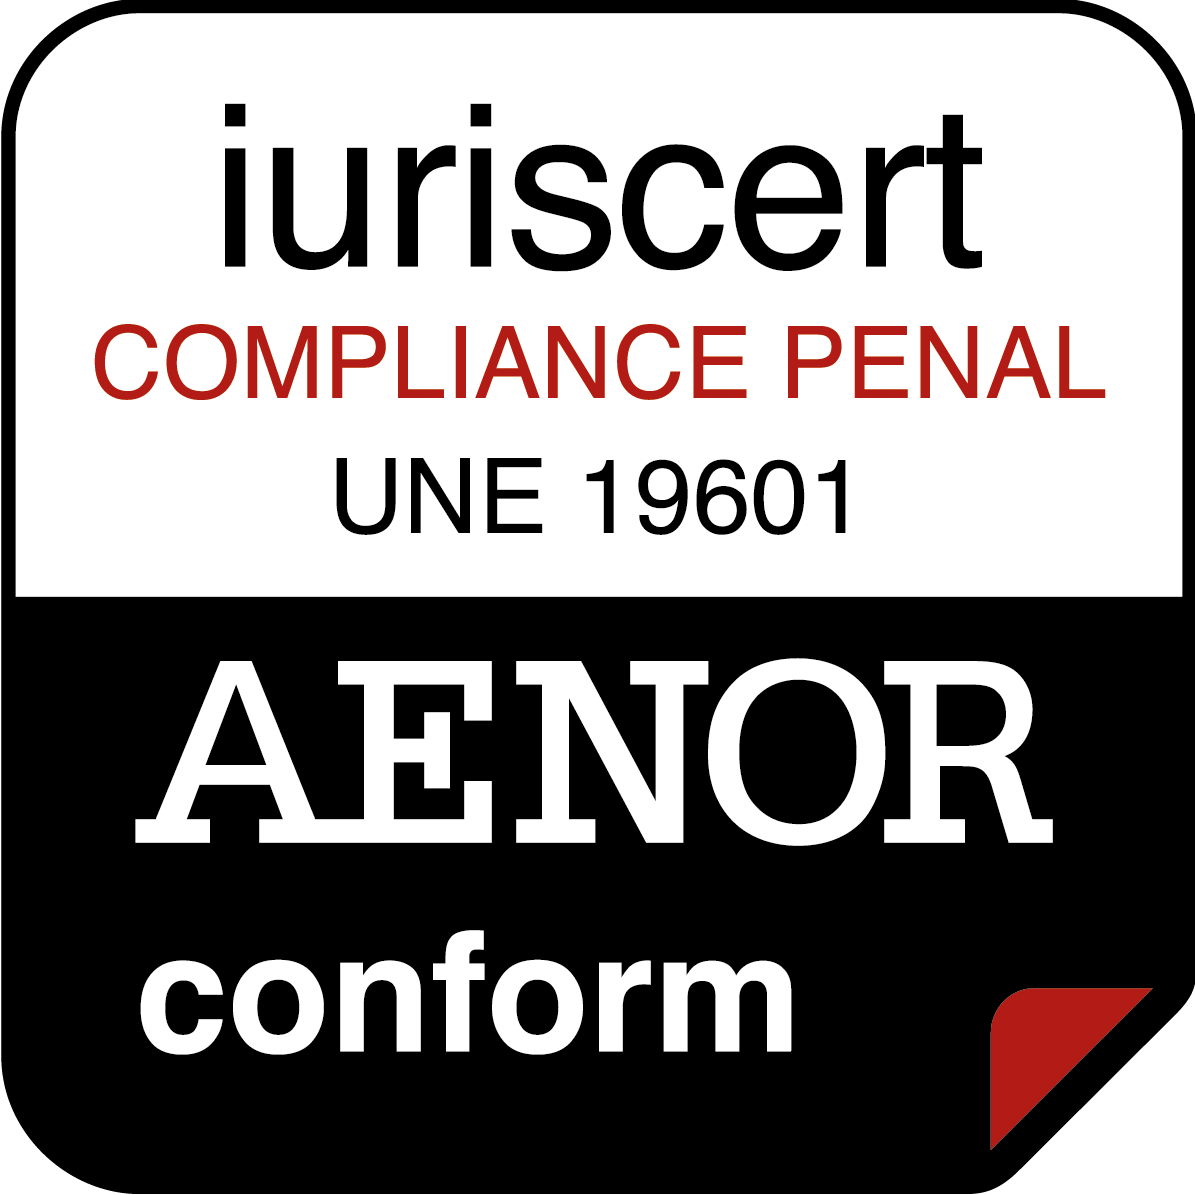 AENOR certificación compliance penal